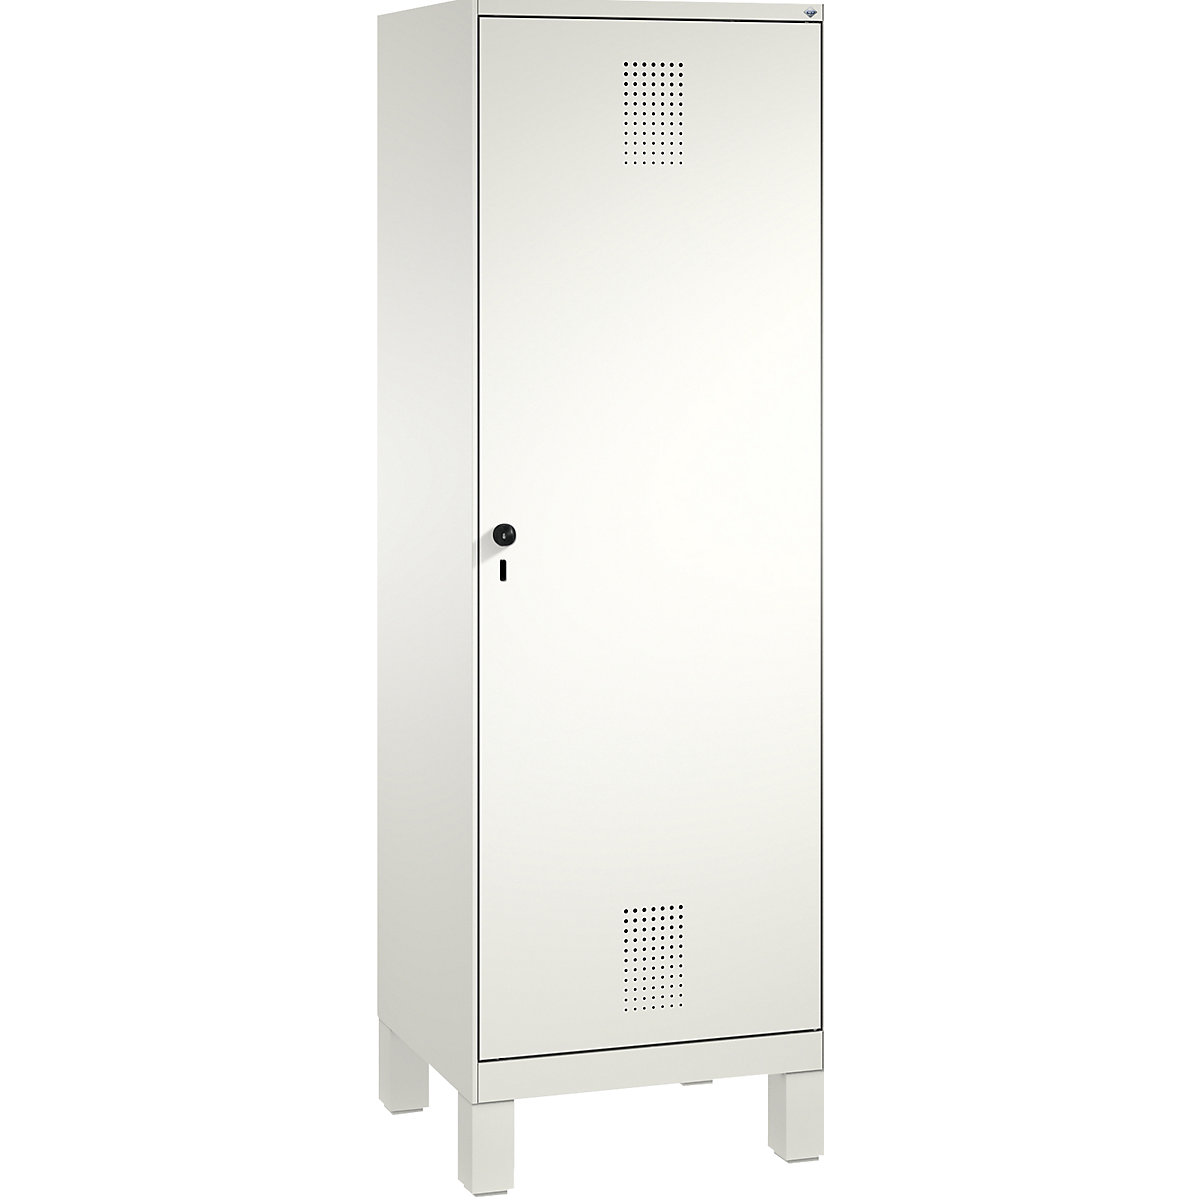 EVOLO Garderobenschrank, Tür über 2 Abteile, mit Füßen C+P, 2 Abteile, 1 Tür, Abteilbreite 300 mm, verkehrsweiß / verkehrsweiß-16